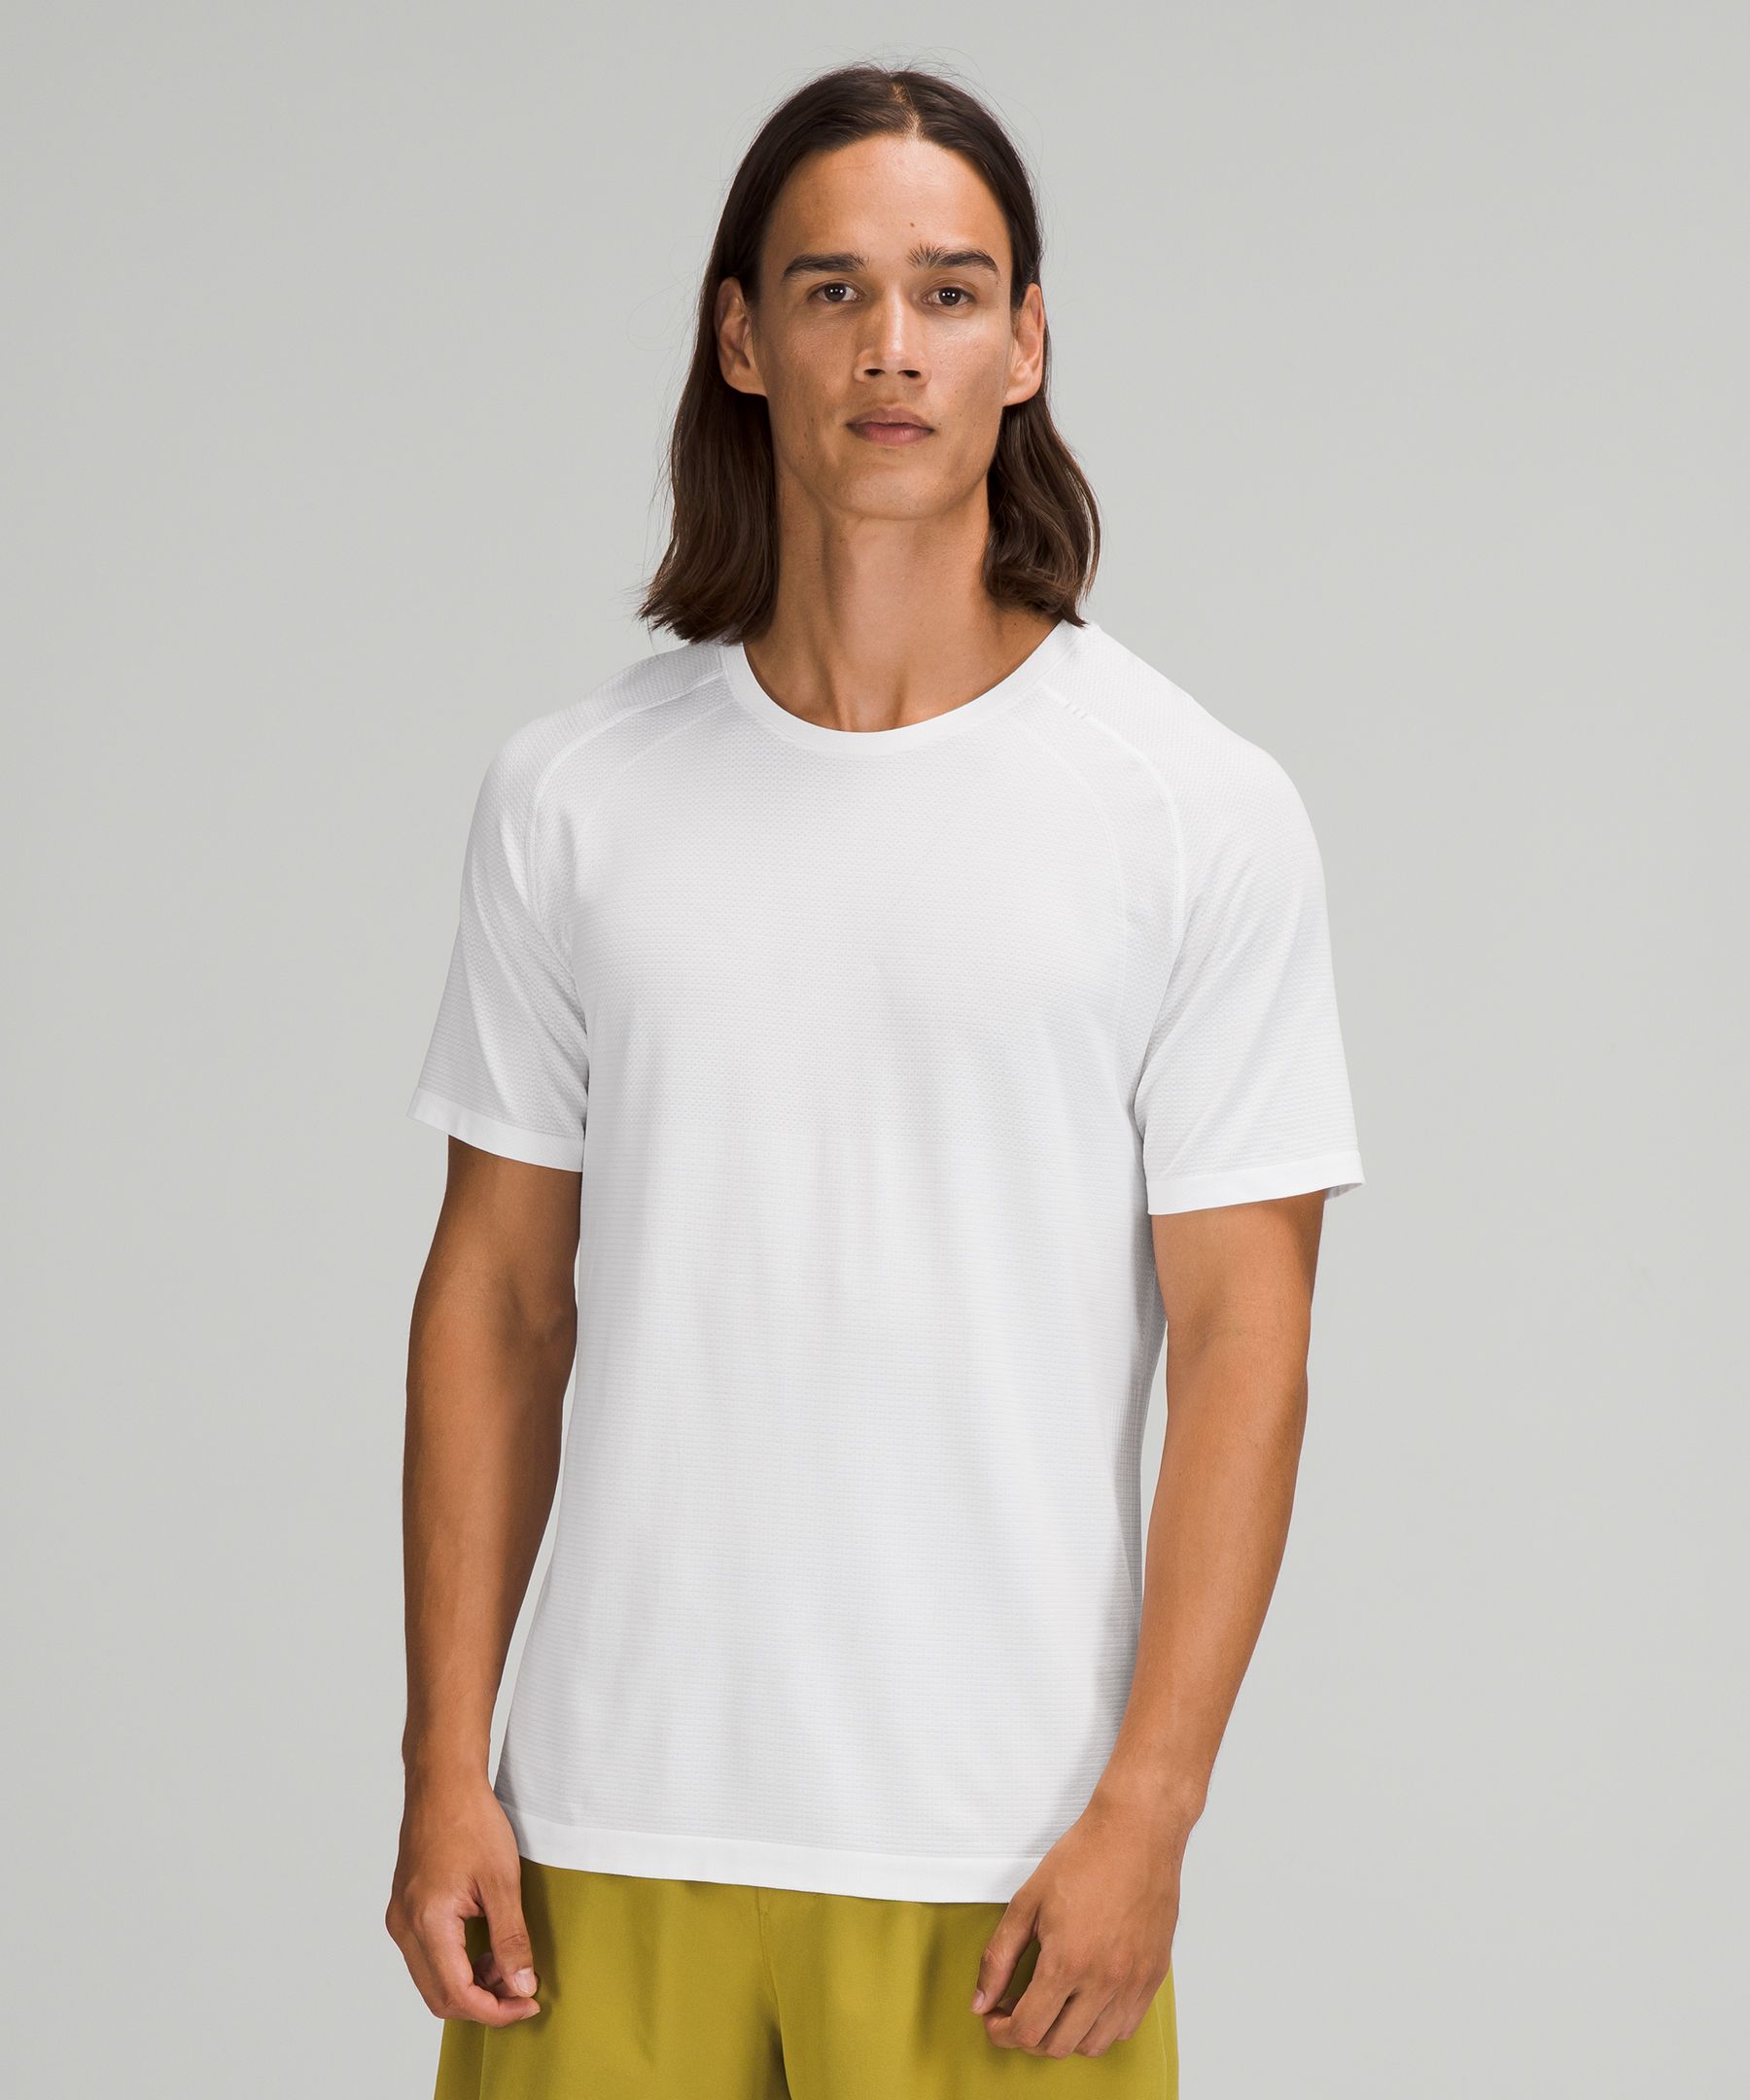 Lululemon Metal Vent Tech Short Sleeve Shirt 2.0 In White